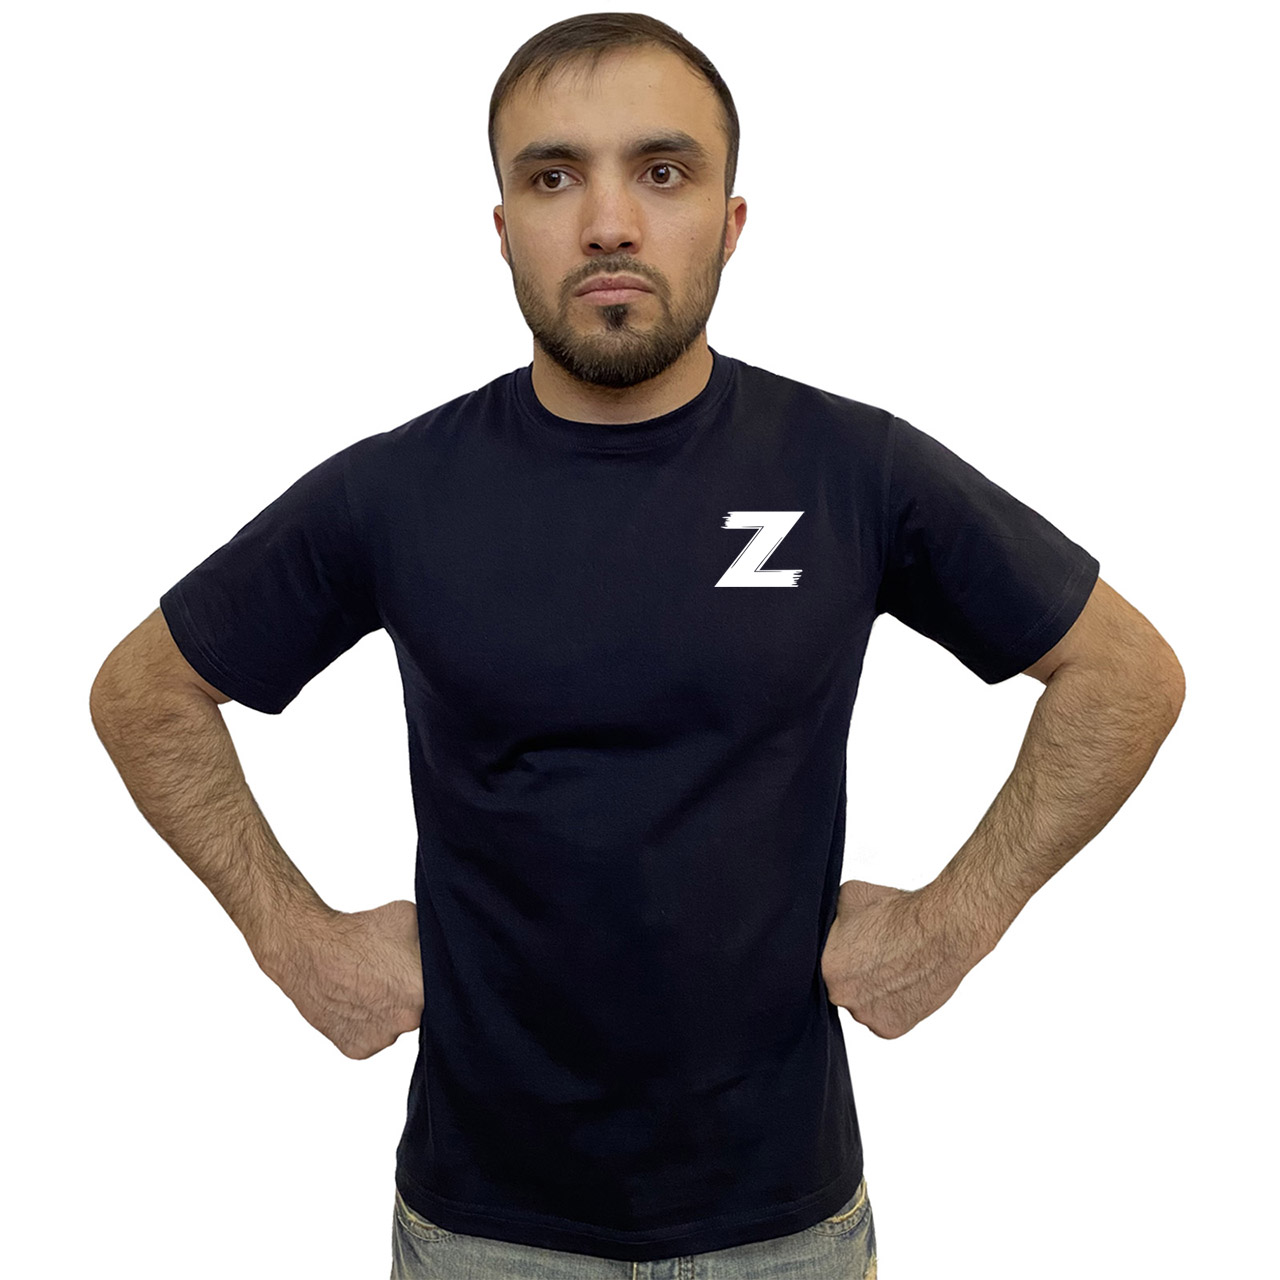 Тёмно-синяя футболка с термотрансфером «Z»